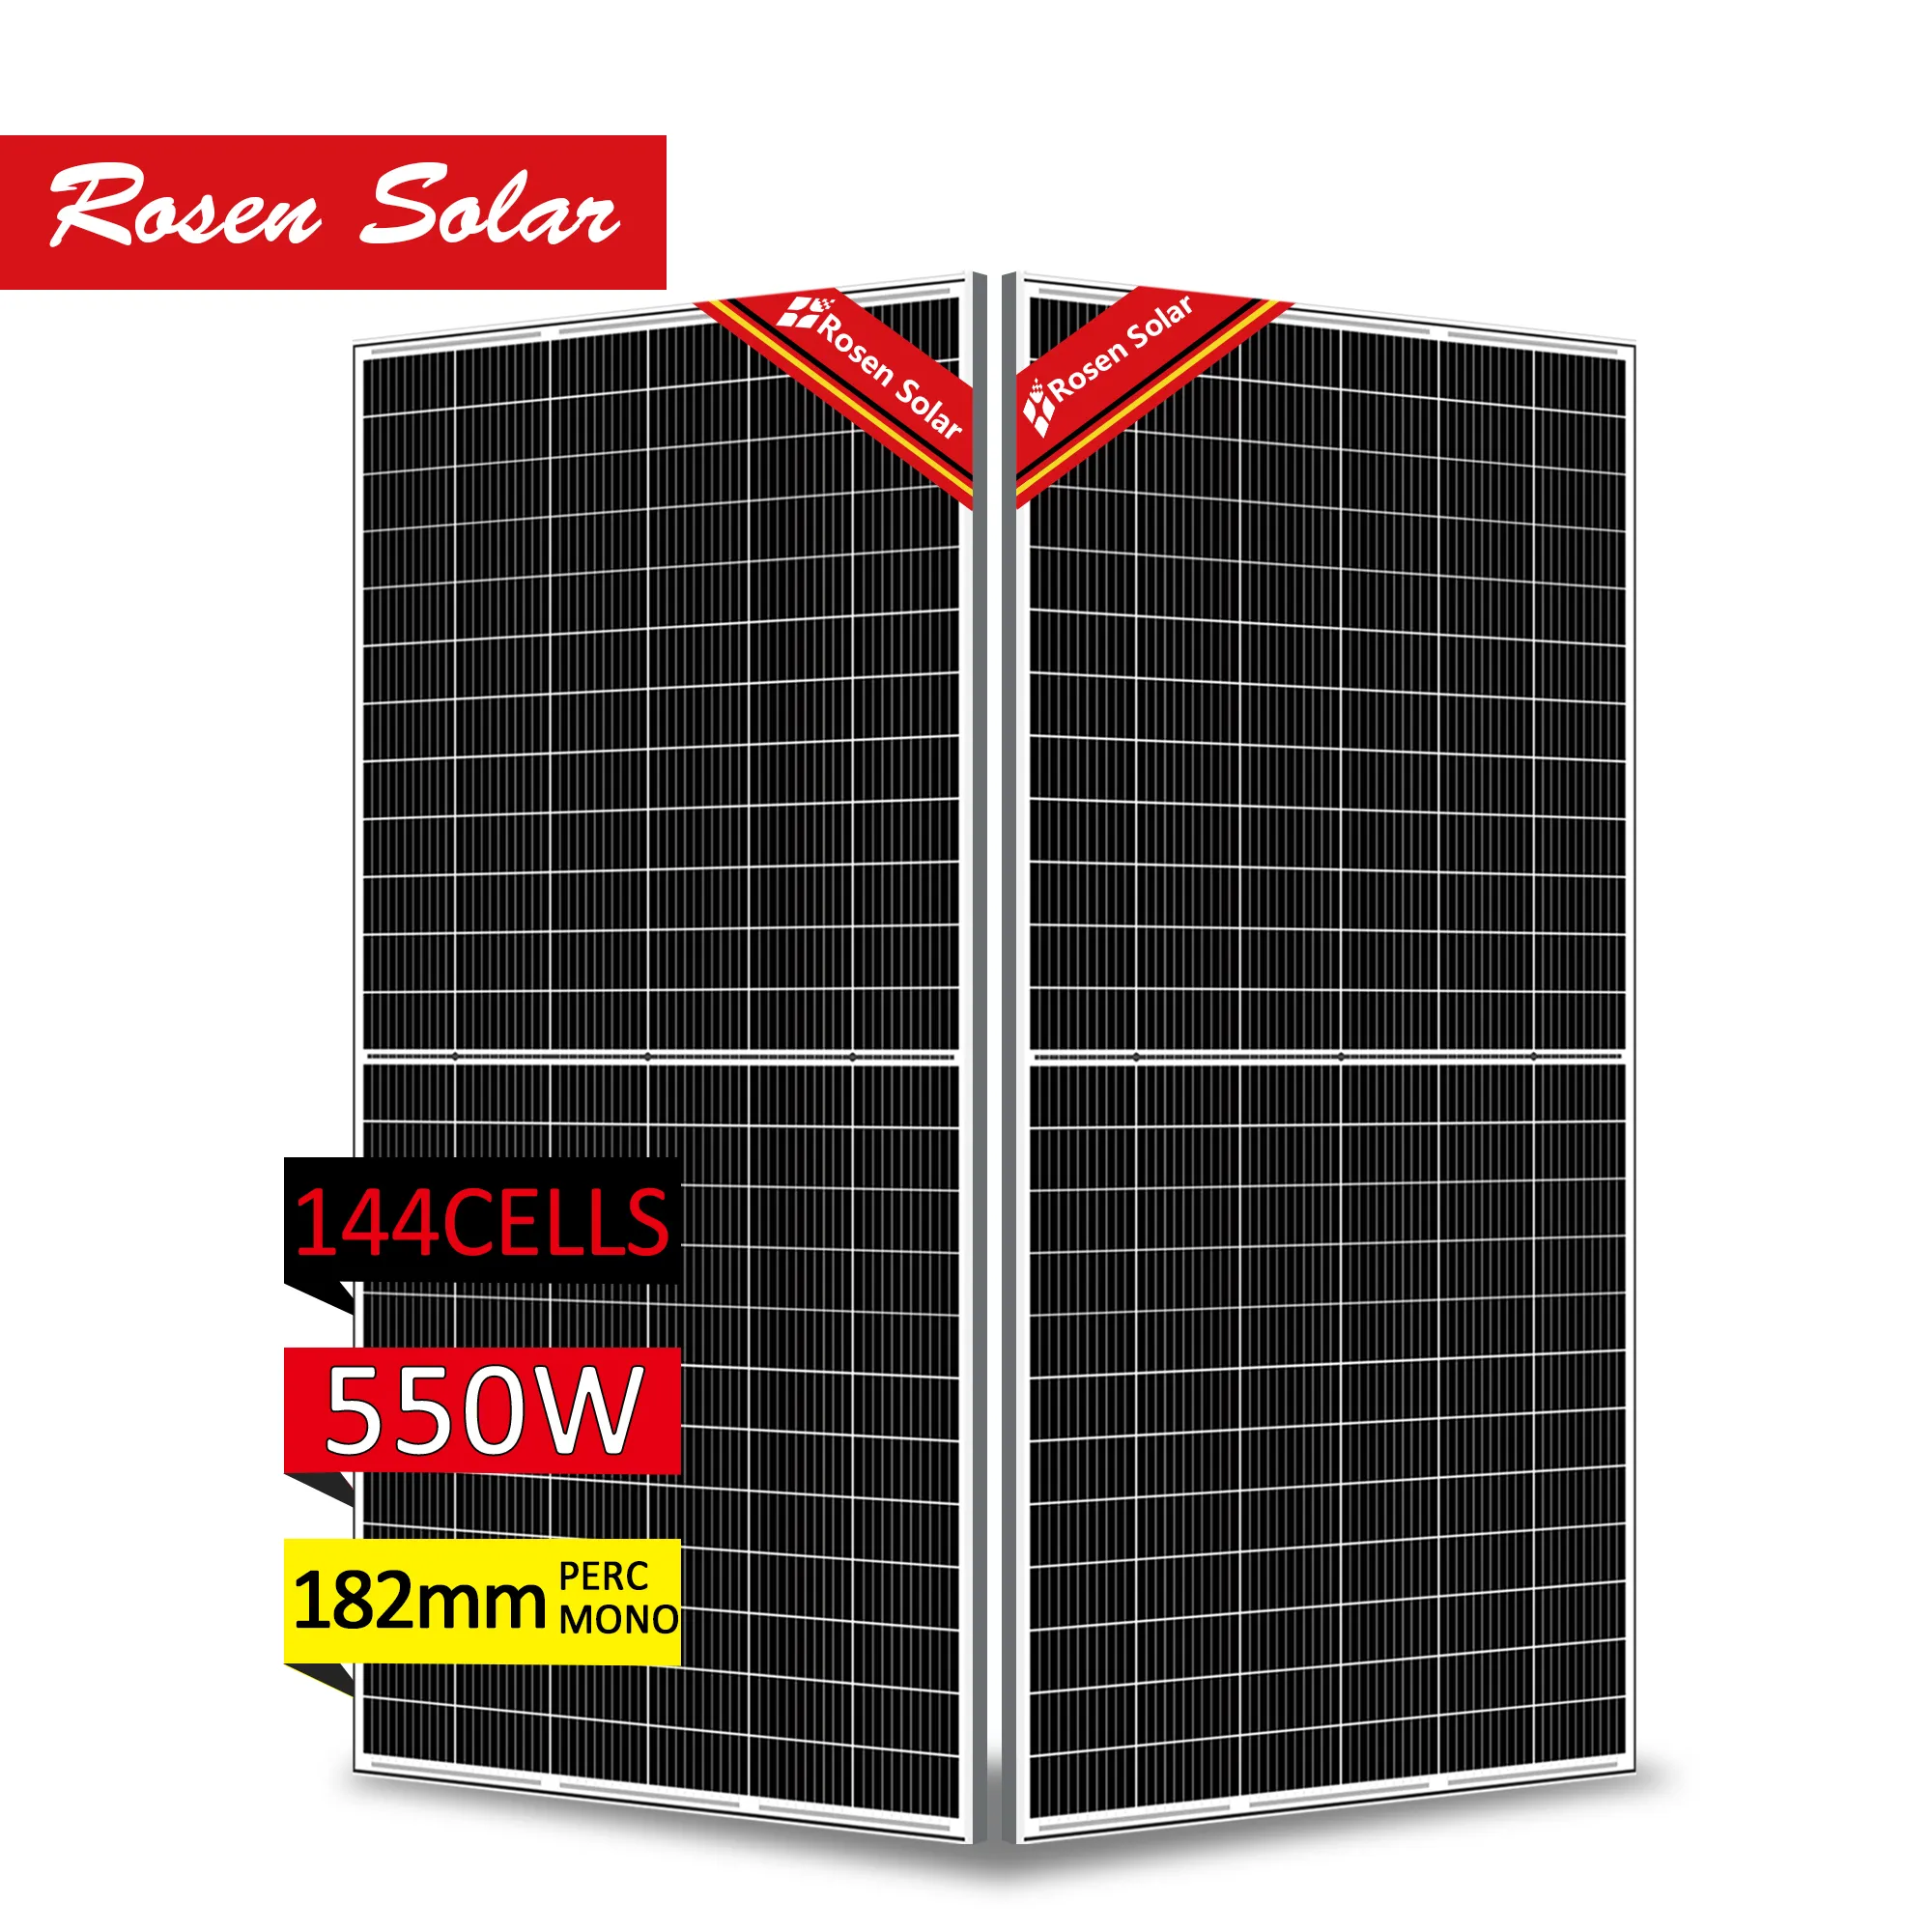 Trinaソーラー550wパネル480w 460w 450wソーラーパネルエネルギーサプライヤー太陽光発電パネル550wヨーロッパ市場